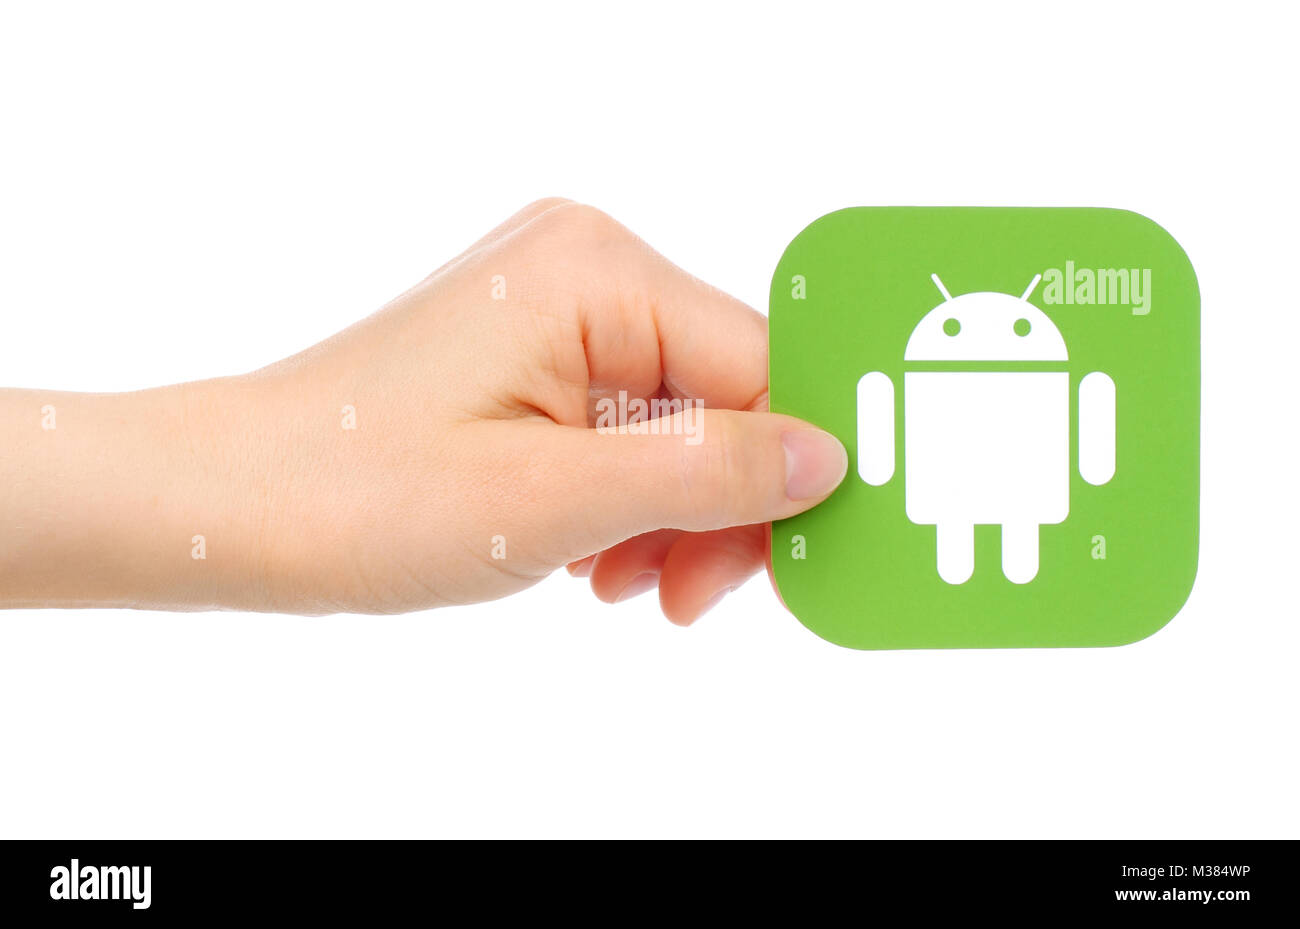 Kiew, Ukraine - 18. Mai 2016: Hand hält Google Android Symbol auf Papier gedruckt. Android ist ein mobiles Betriebssystem von Google entwickelt Stockfoto